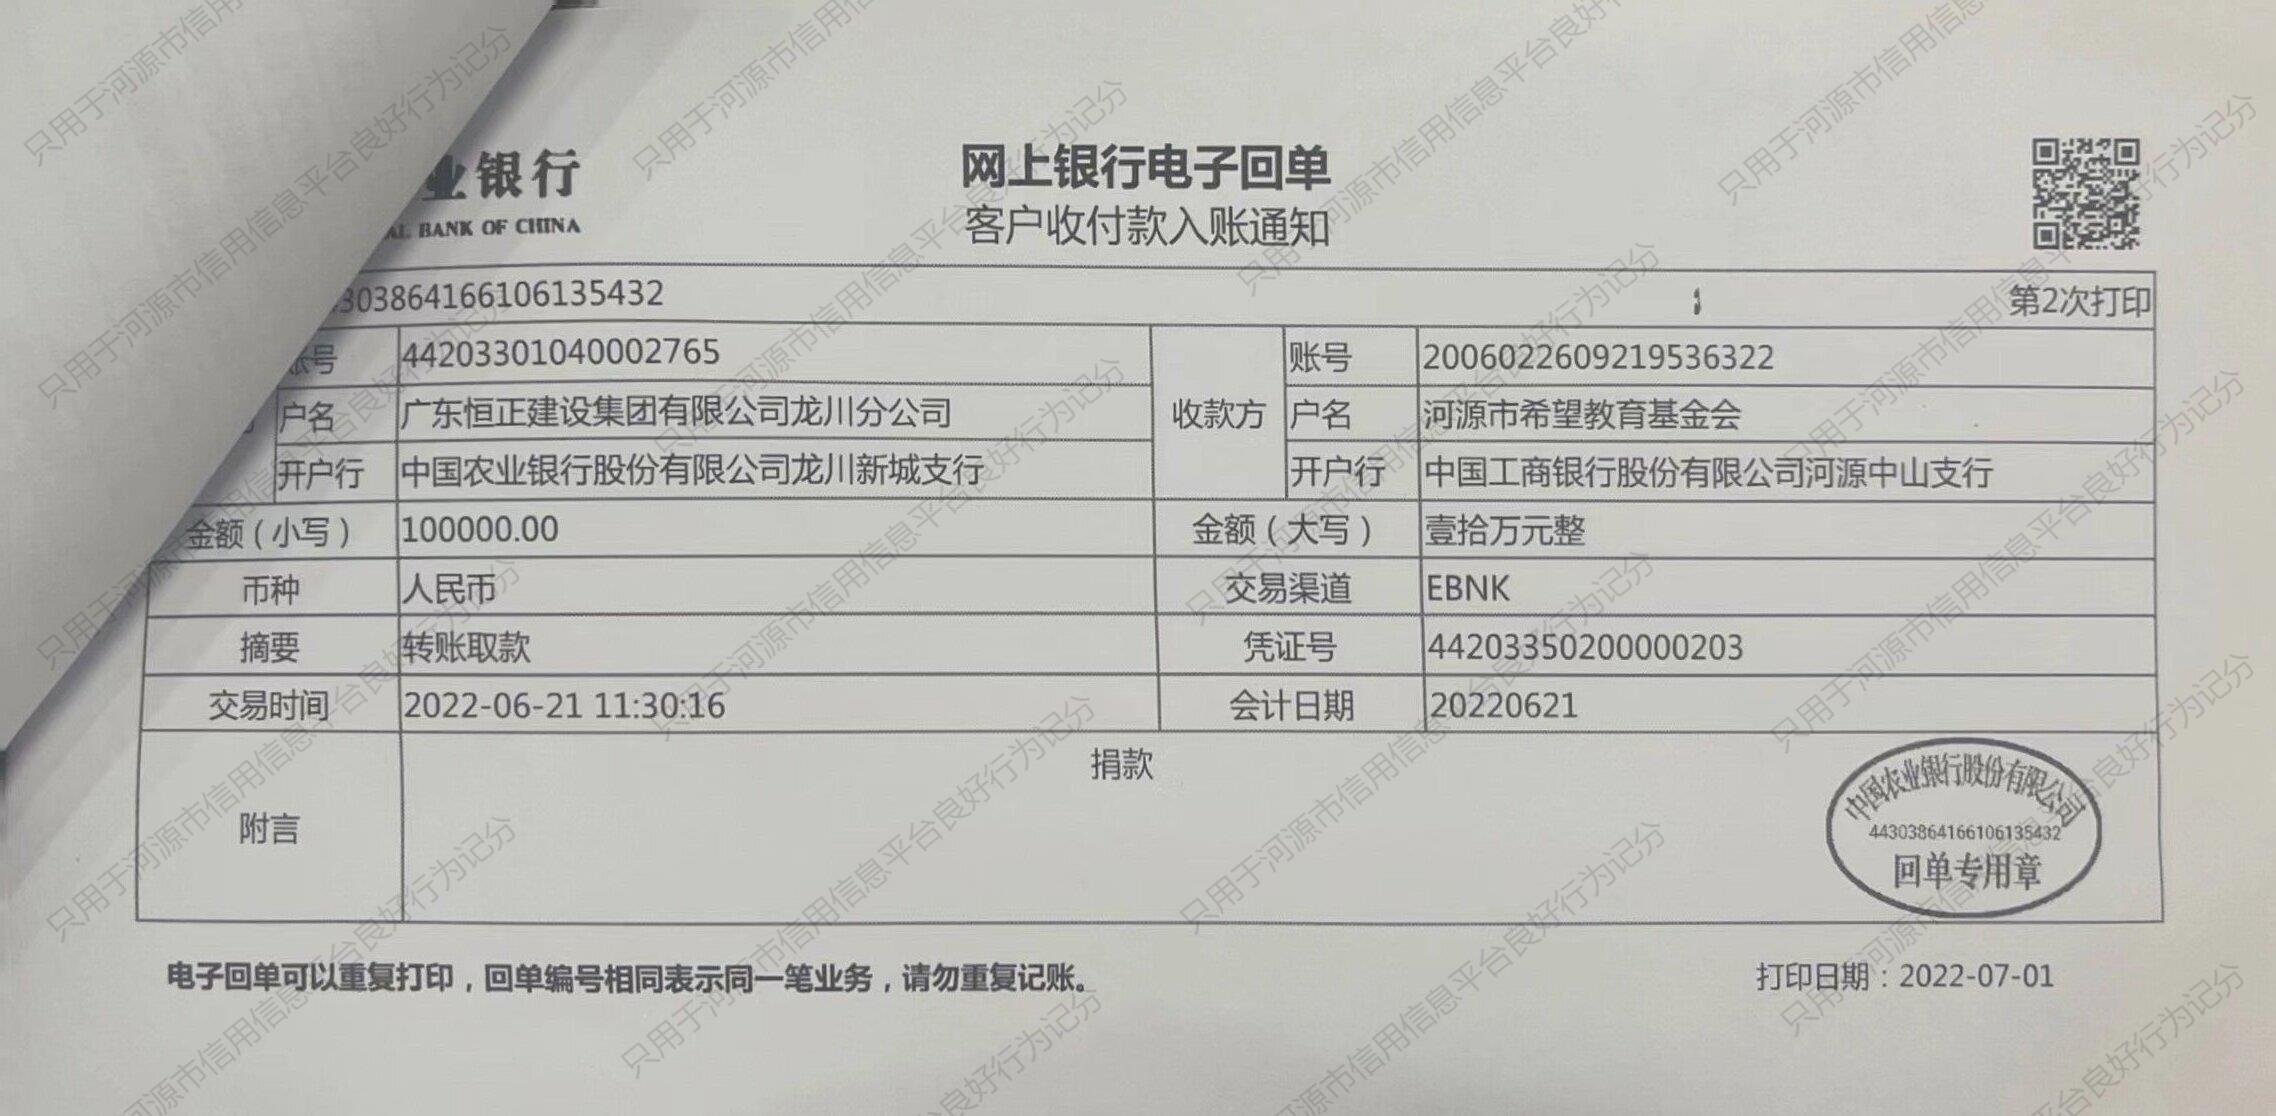 龙川希望教育基金会捐款10万元转账凭证